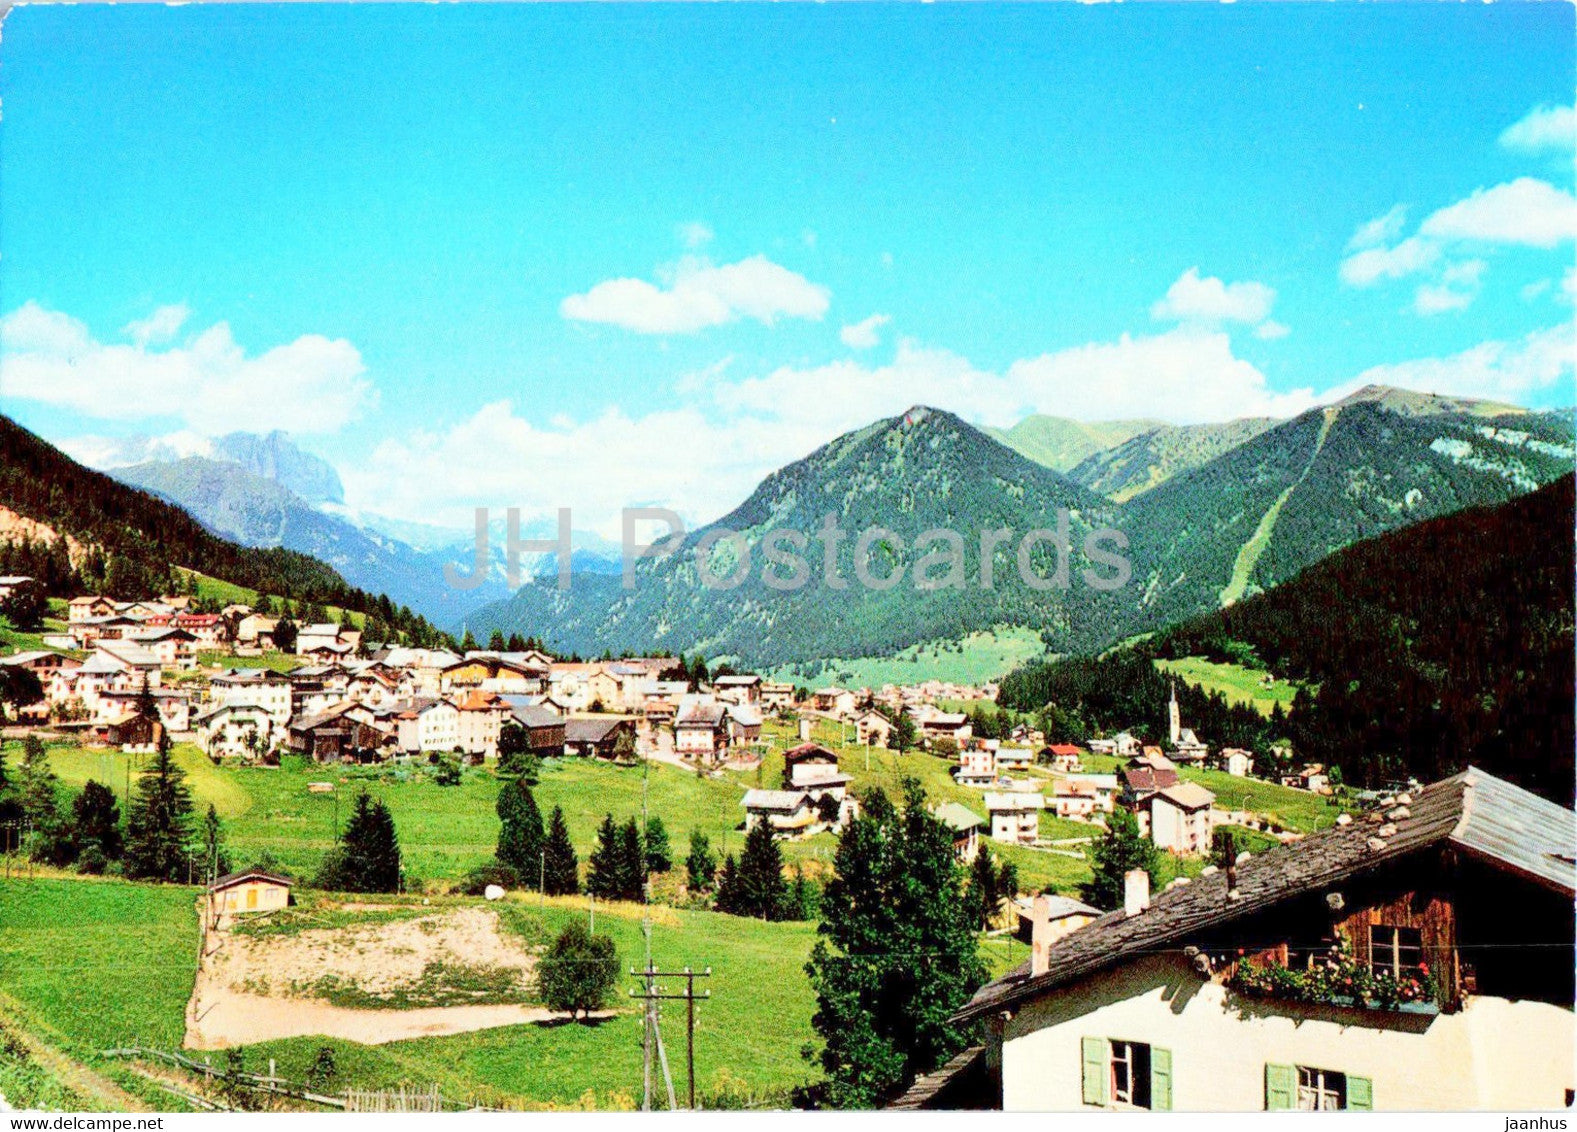 Vigo di Fassa 1400 m - Panorama - Italy - unused - JH Postcards